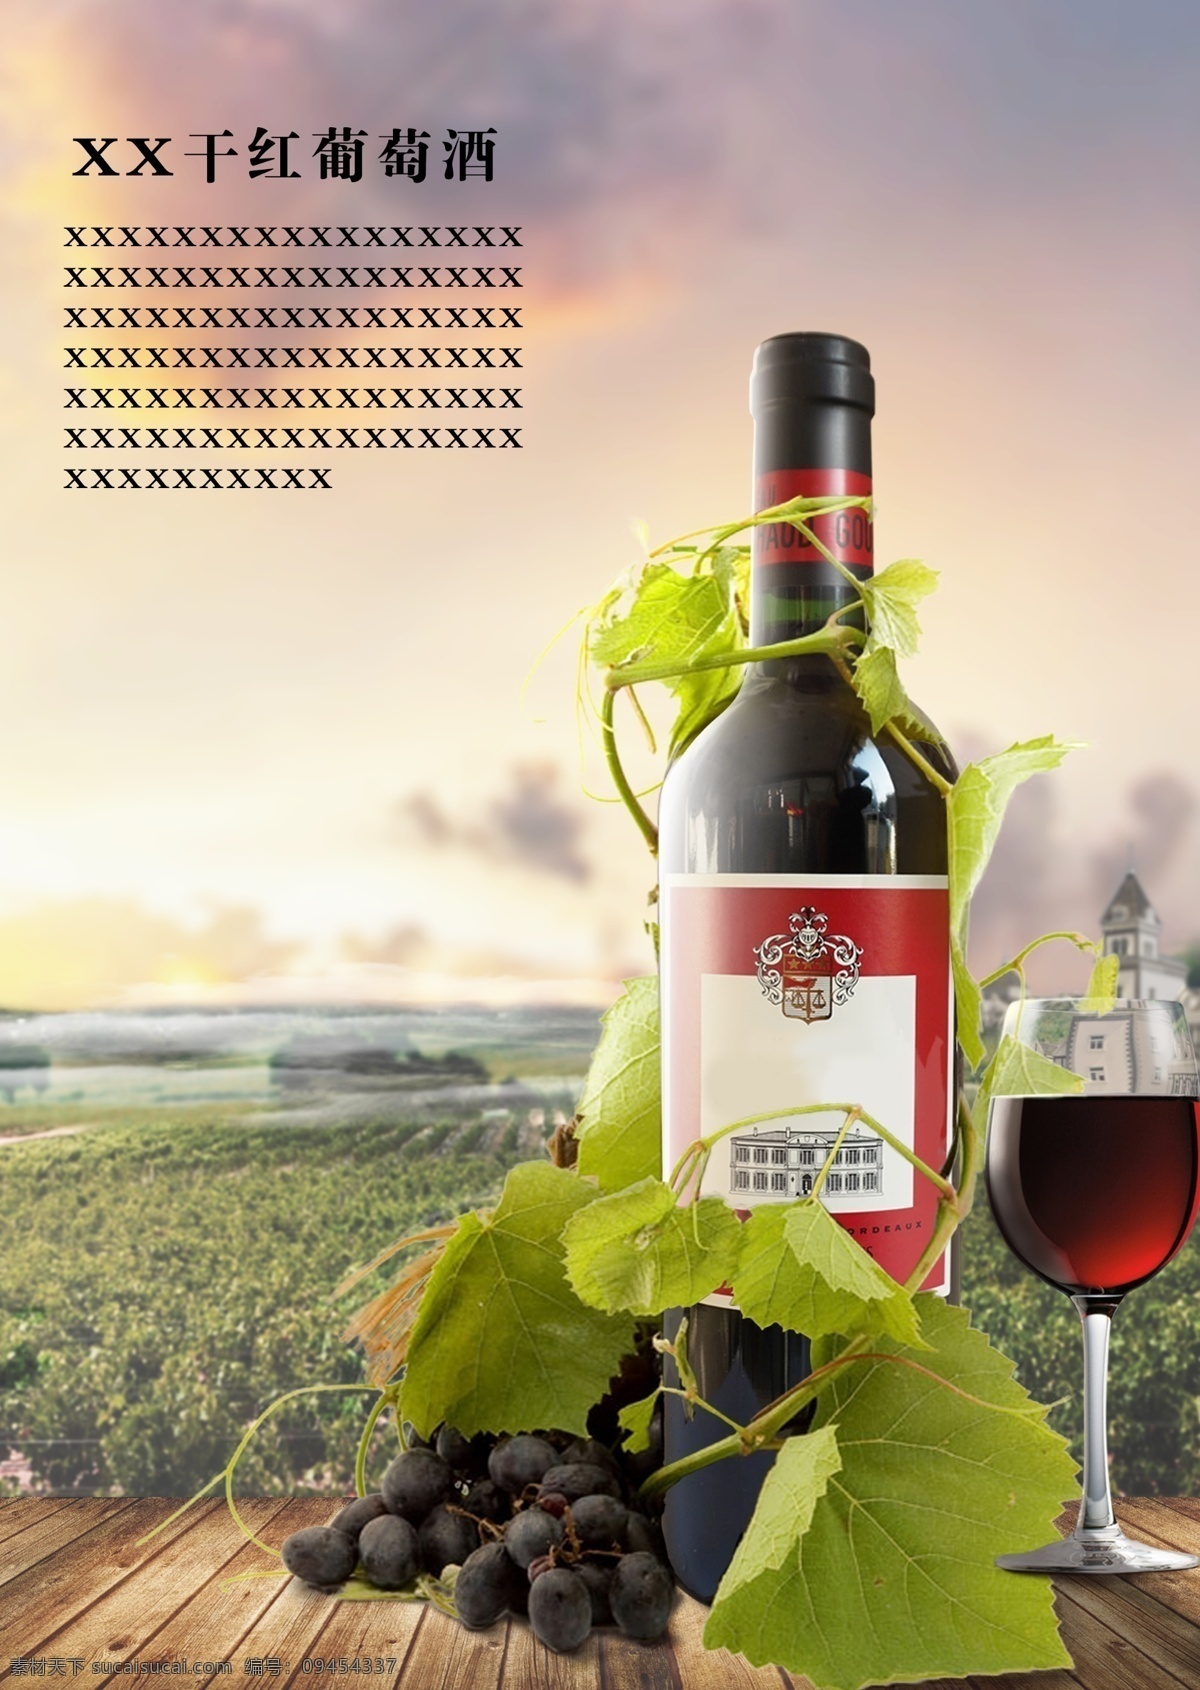 红酒宣传海报 红酒 酒保 葡萄基地 红酒杯子 酒瓶子